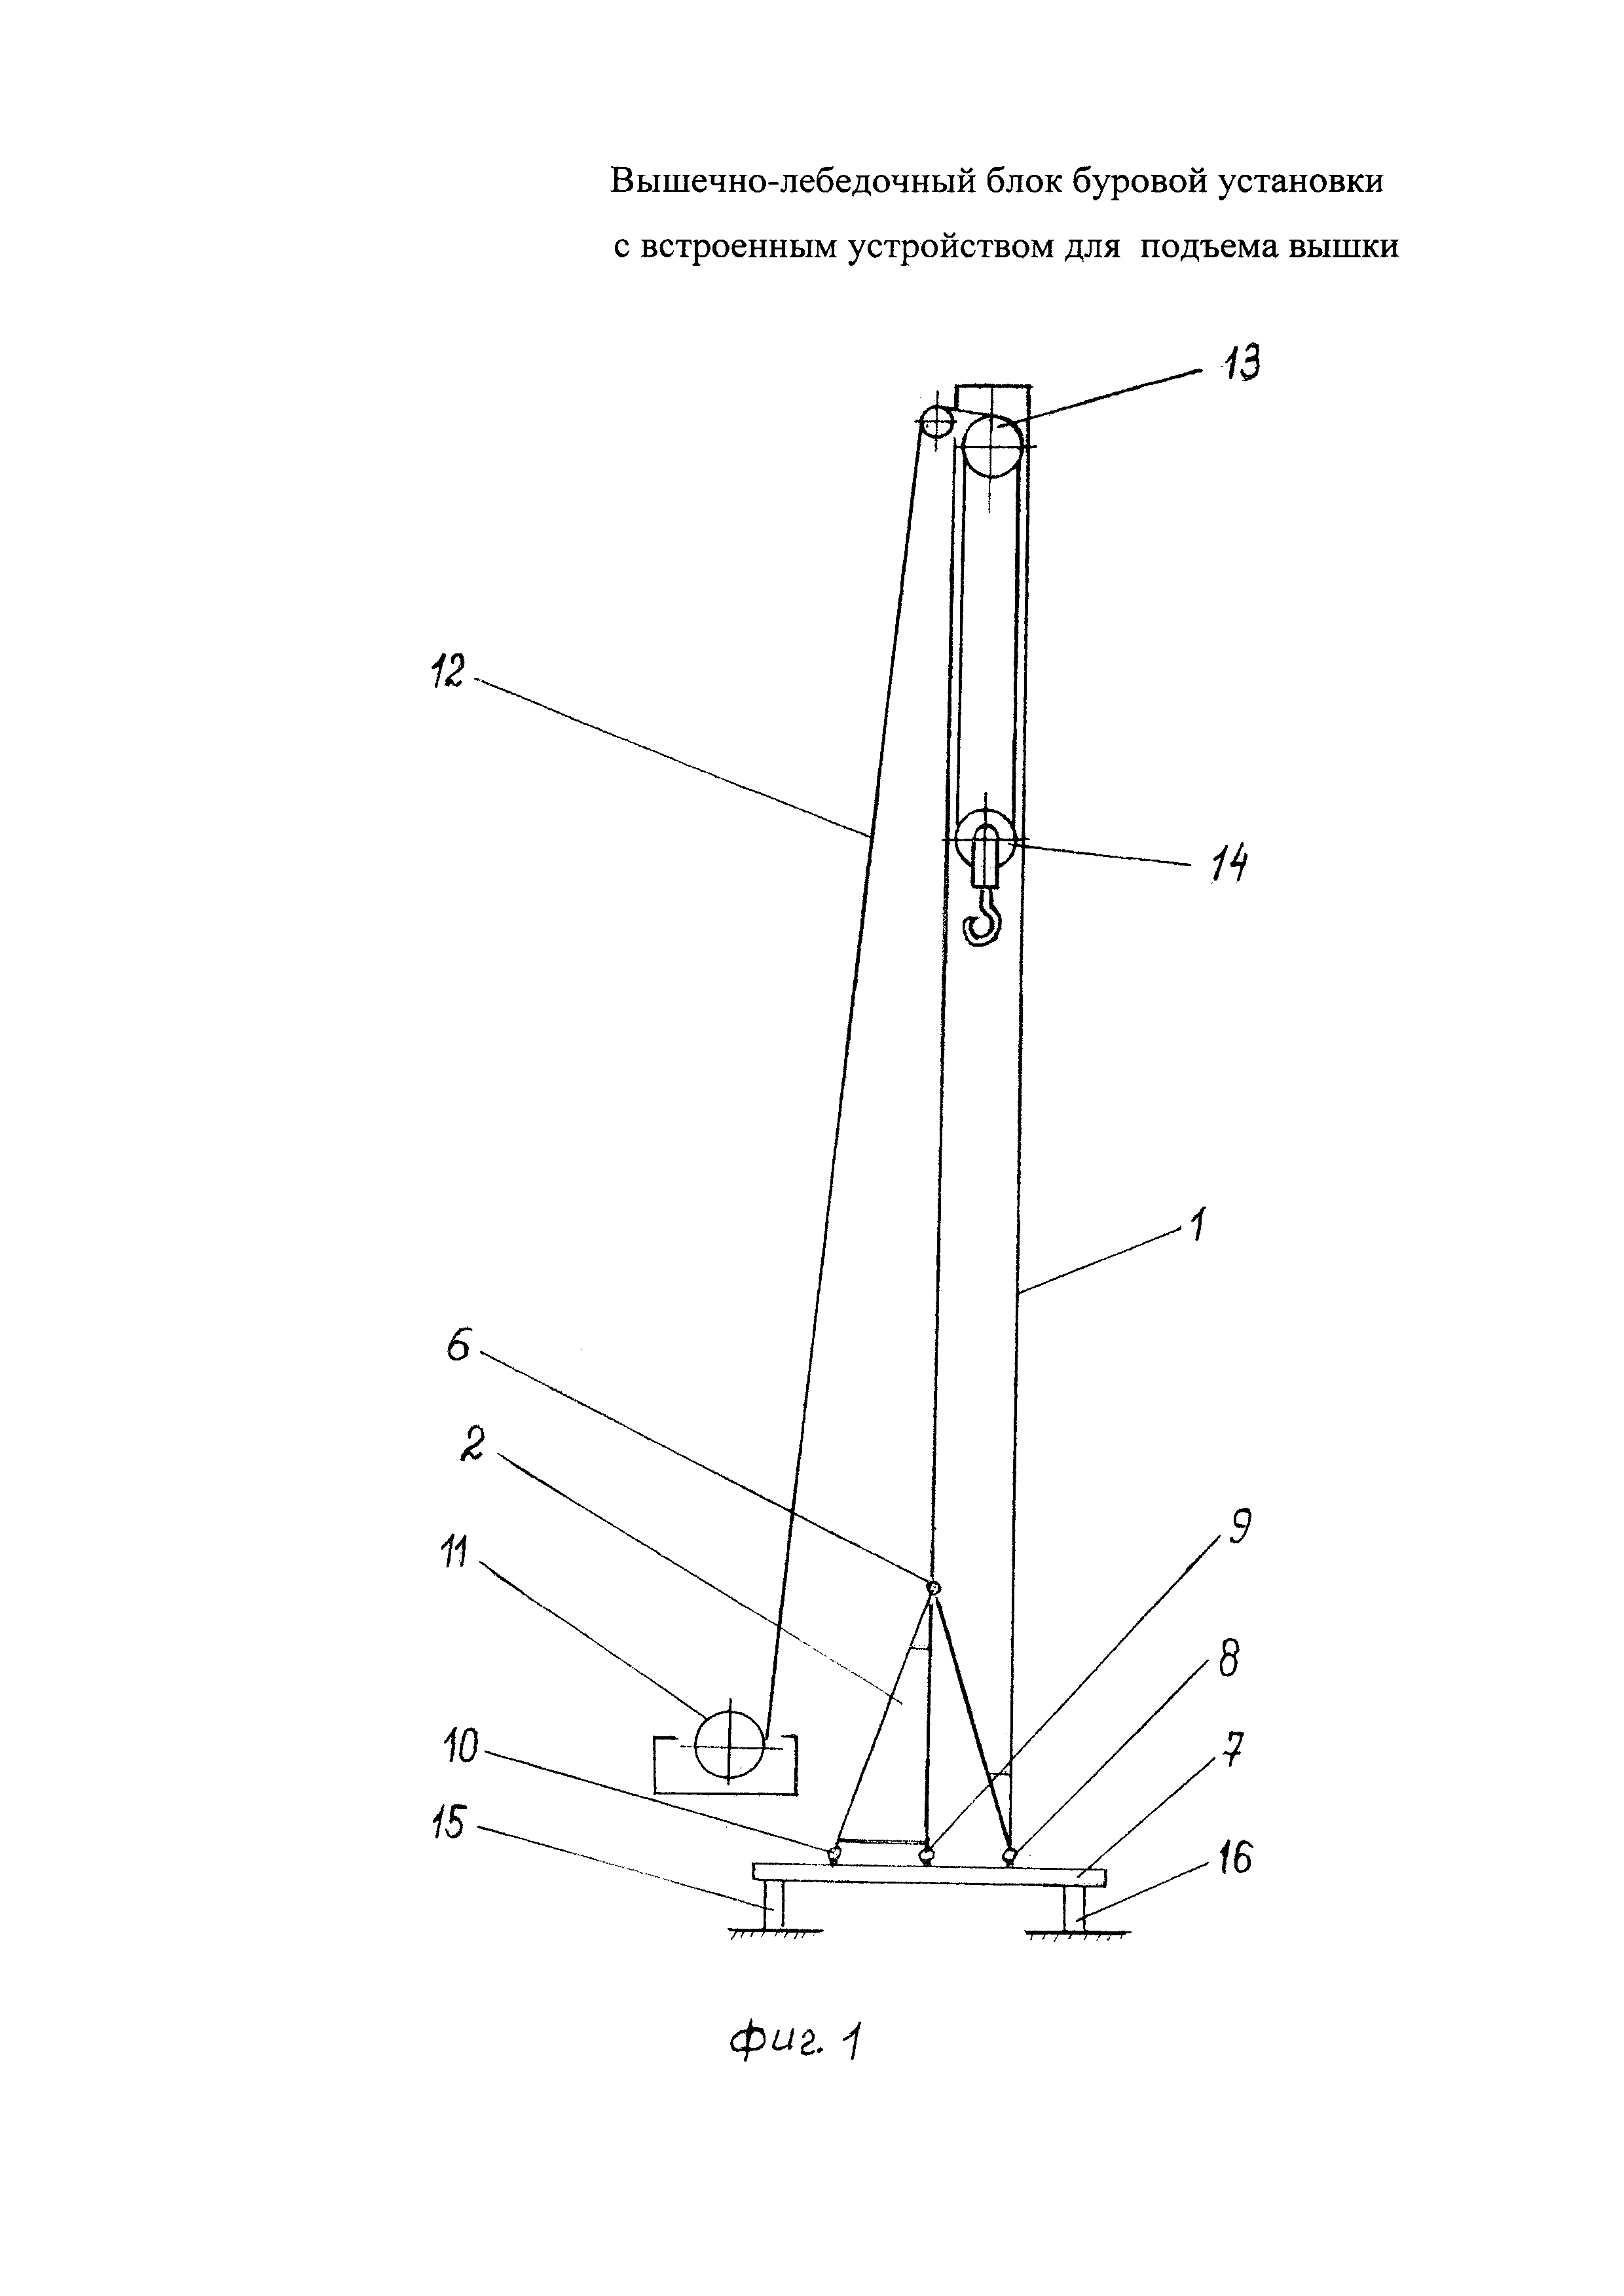 Вышечно-лебедочный блок буровой установки с встроенным устройством для подъема вышки